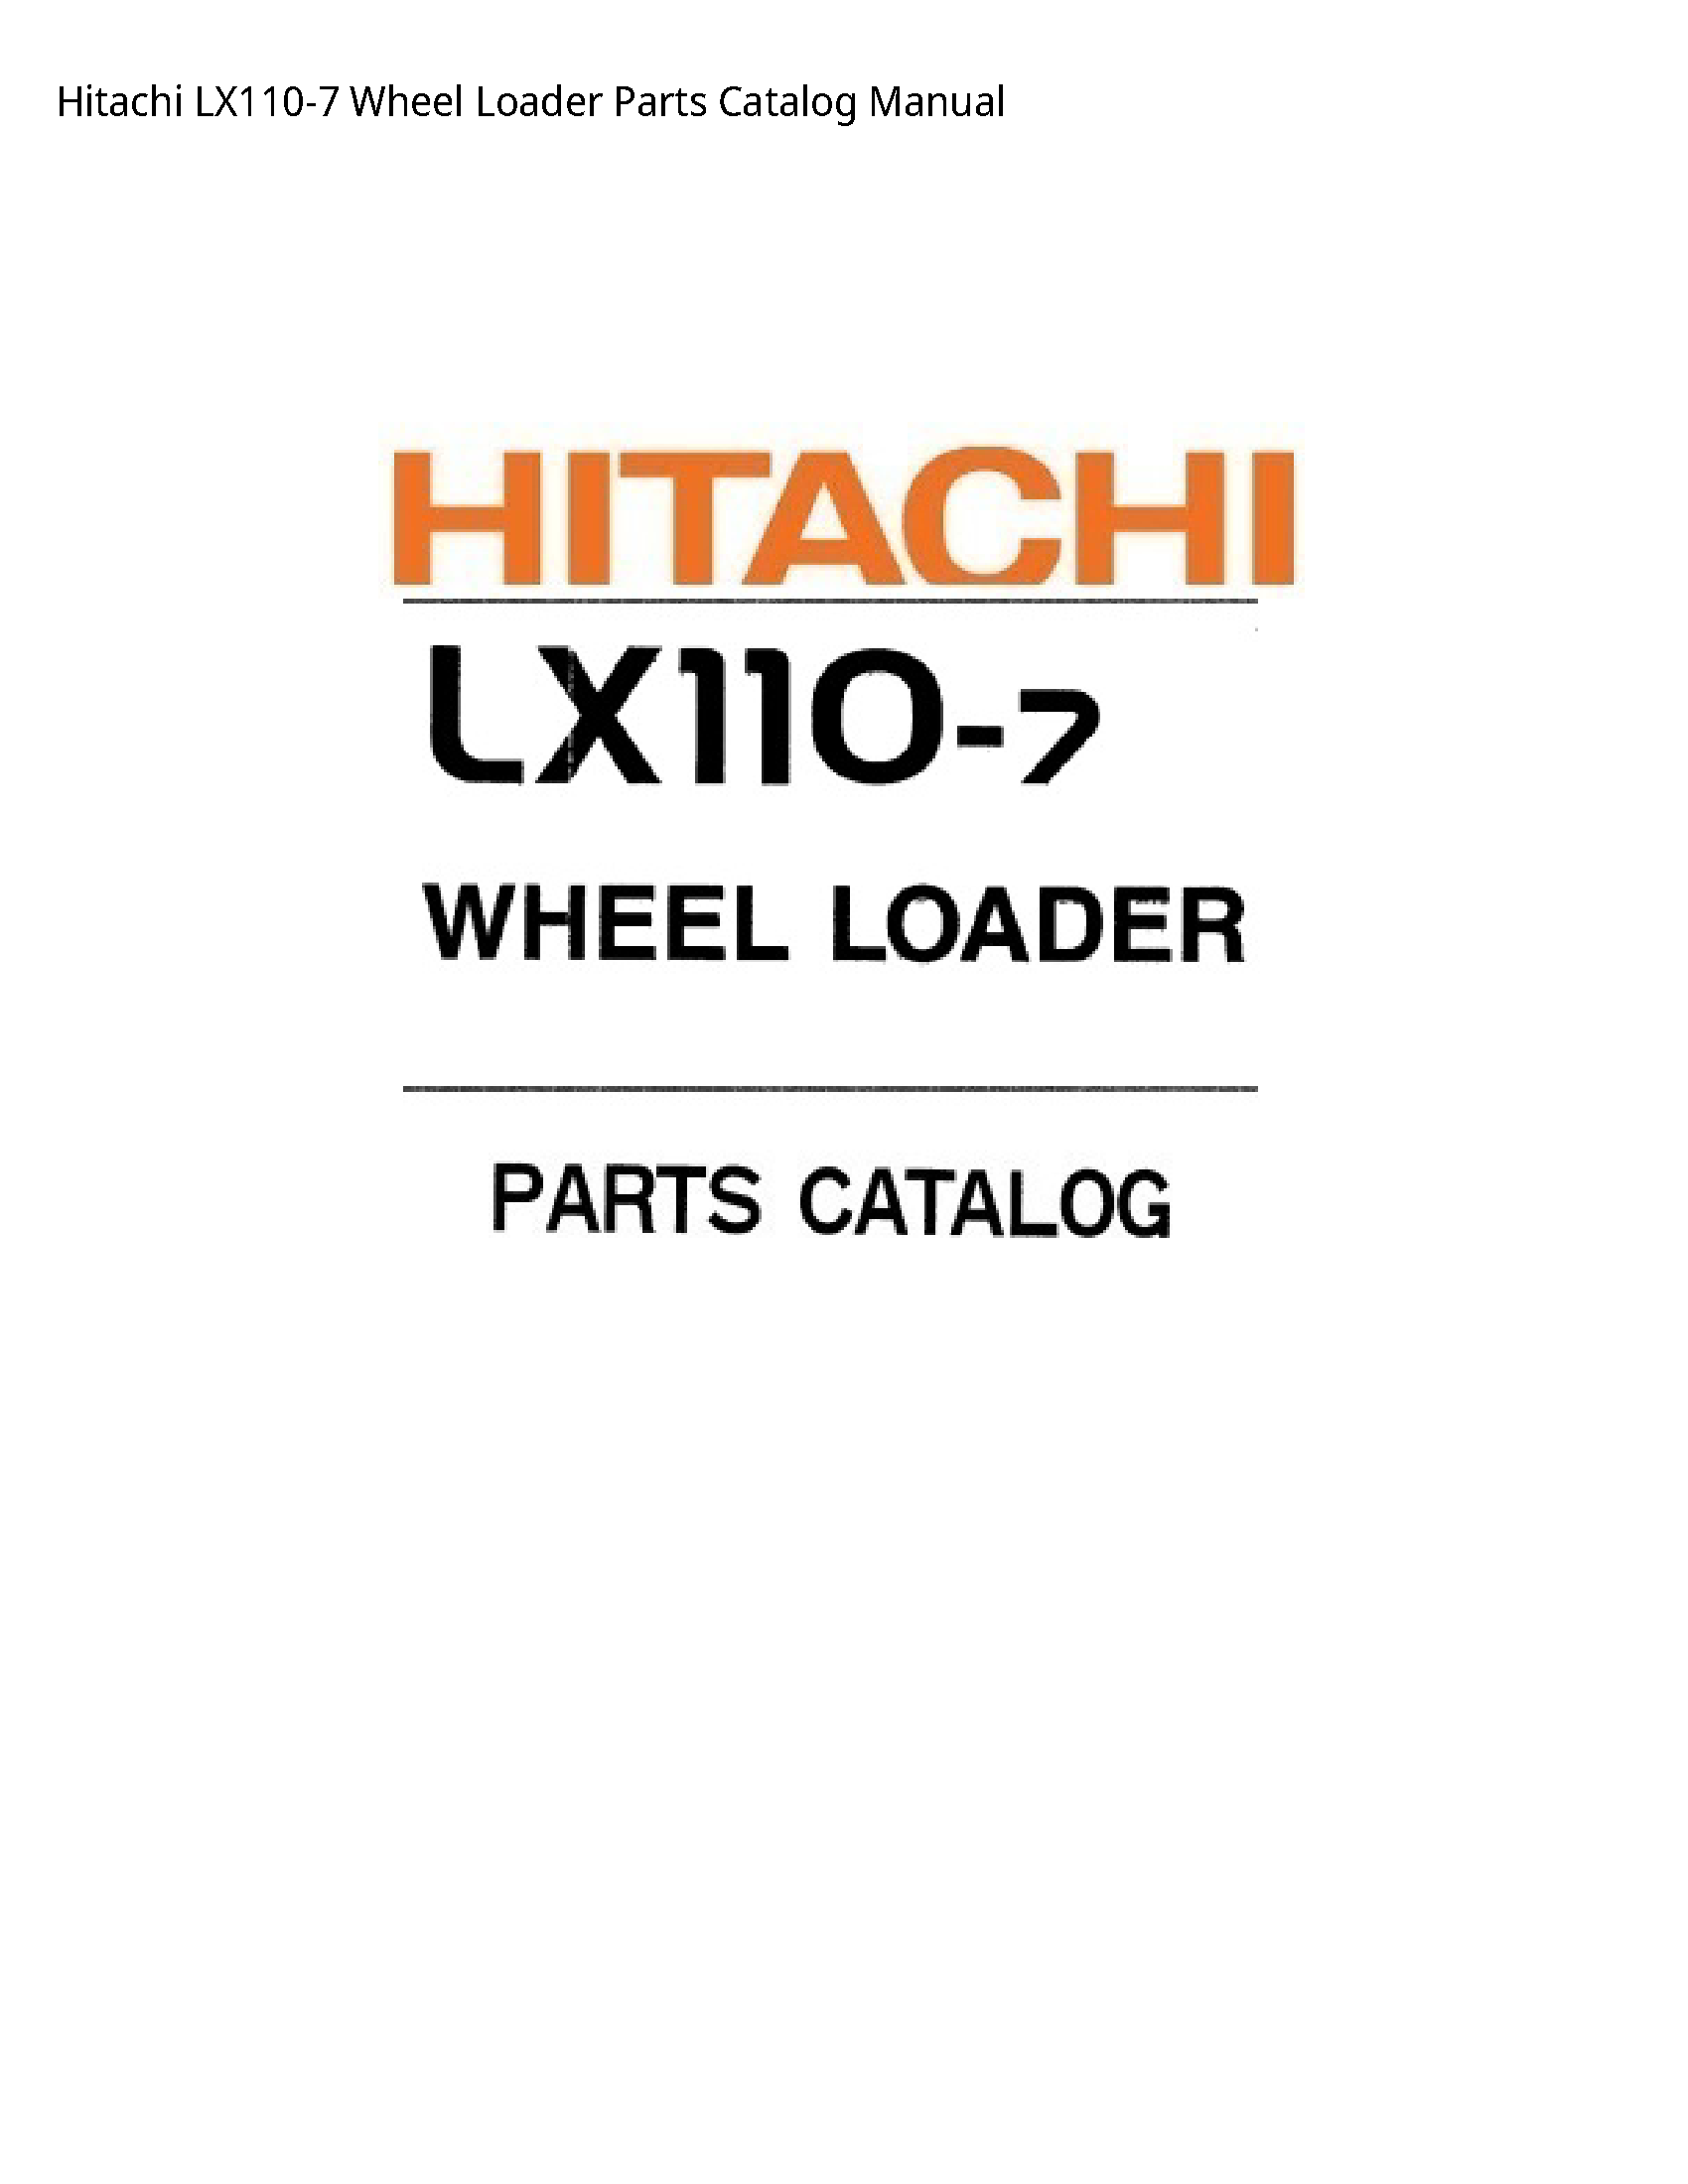 Hitachi LX110-7 Wheel Loader Parts Catalog manual